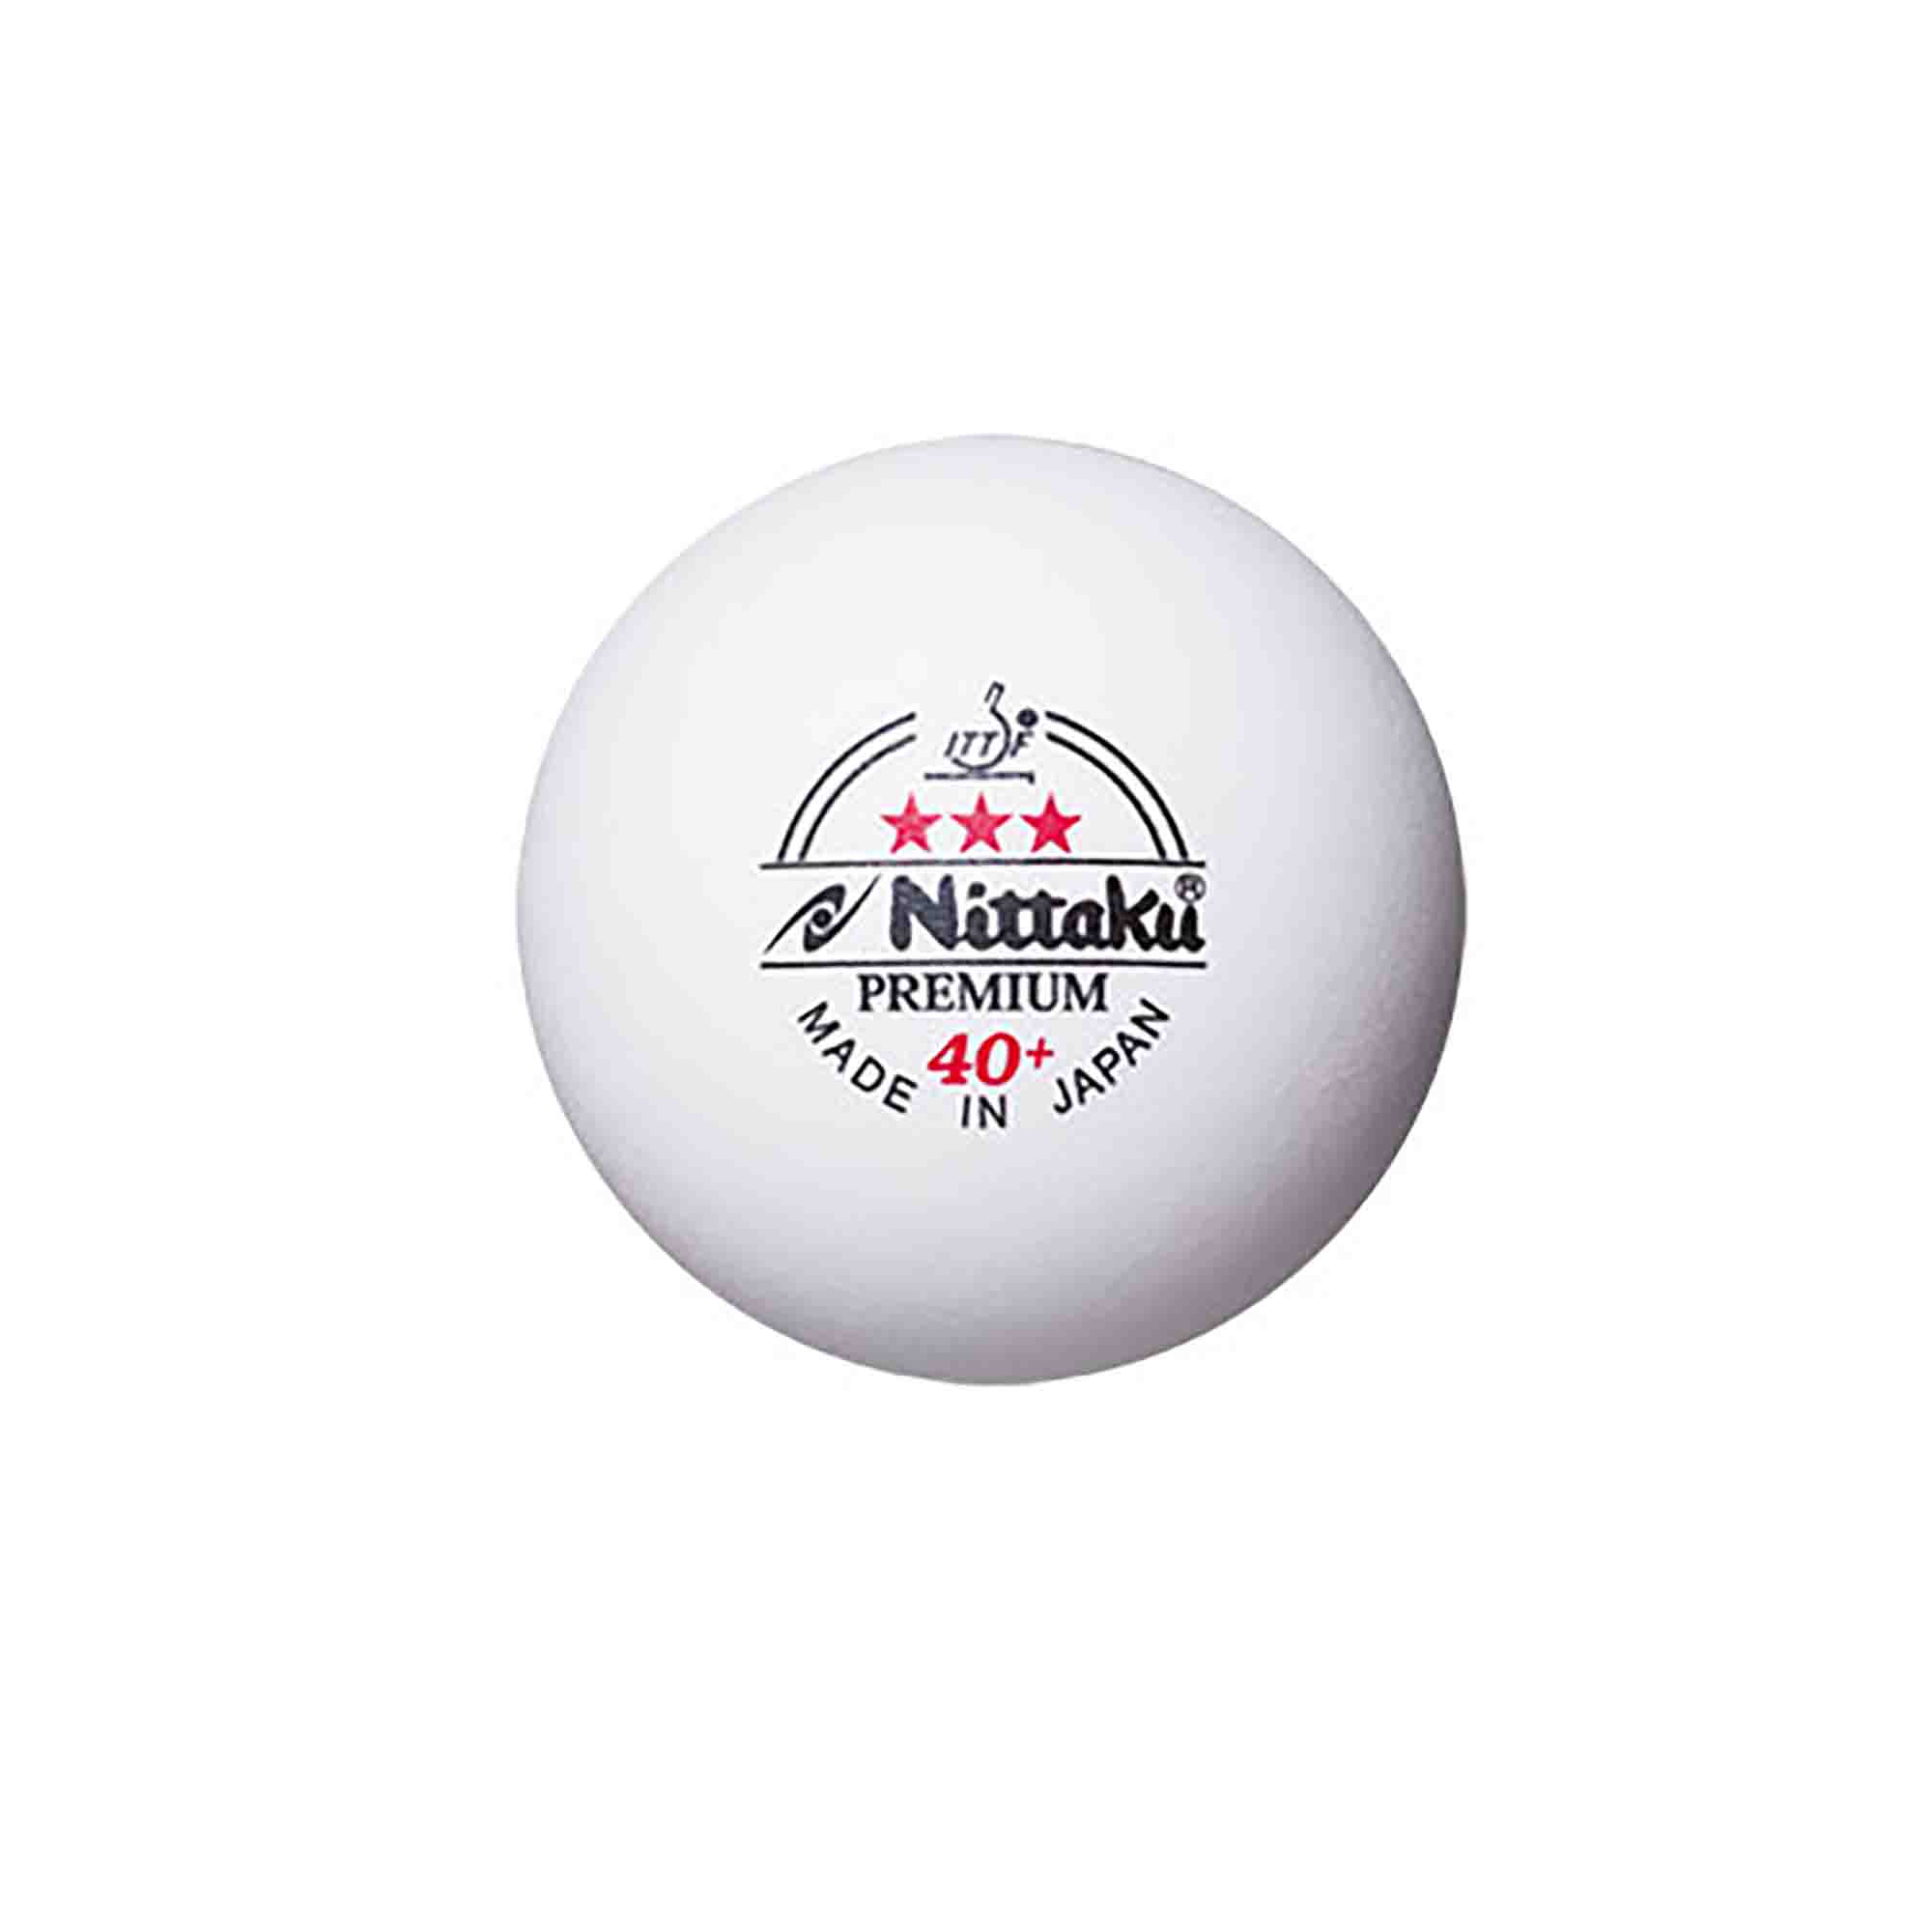 Nittaku Ball Premium 40+ *** Cell Free 120er weiß